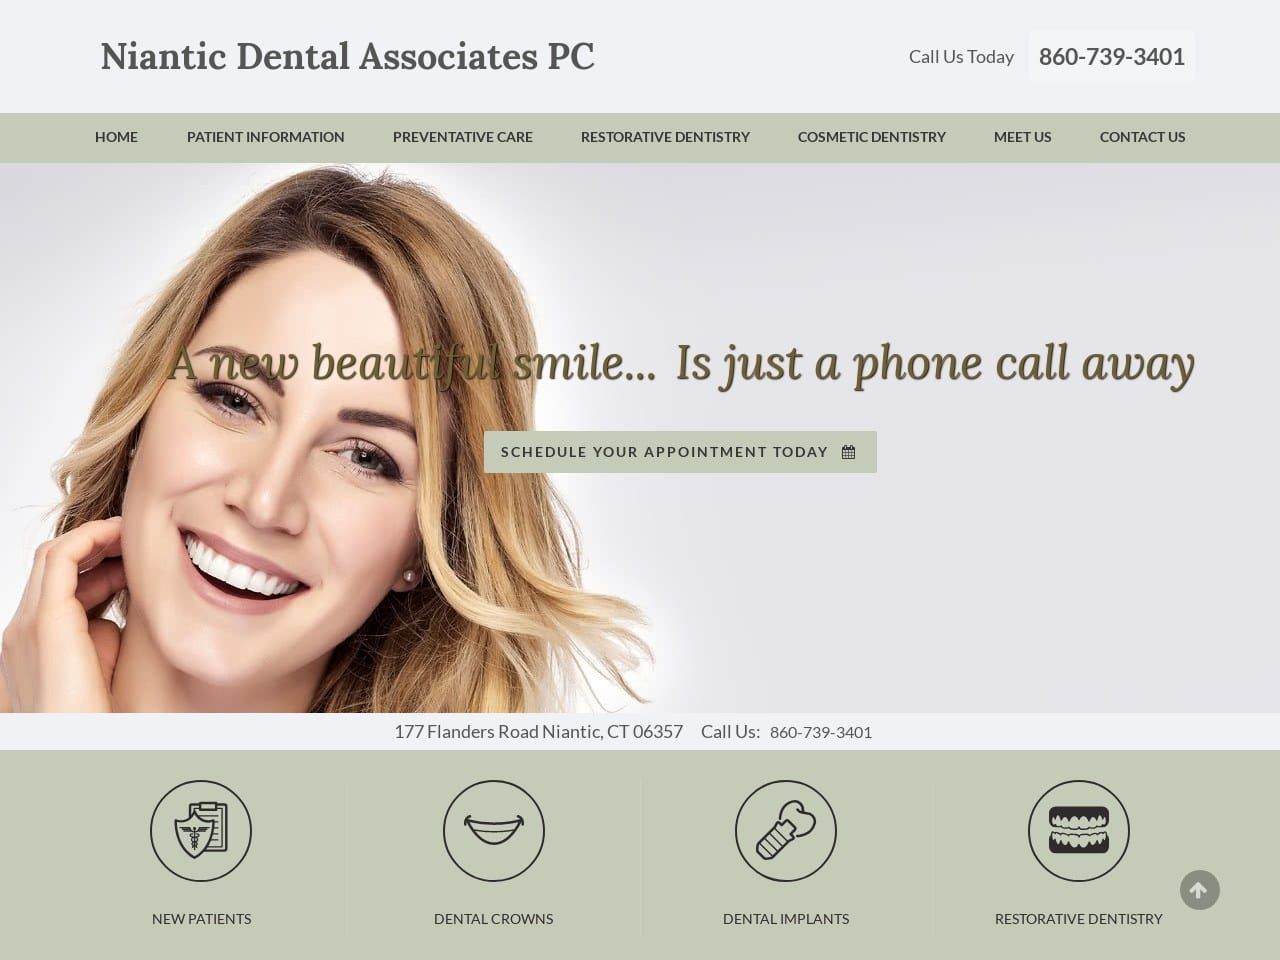 Niantic Dental Associates PC Website Screenshot from nianticdental.com